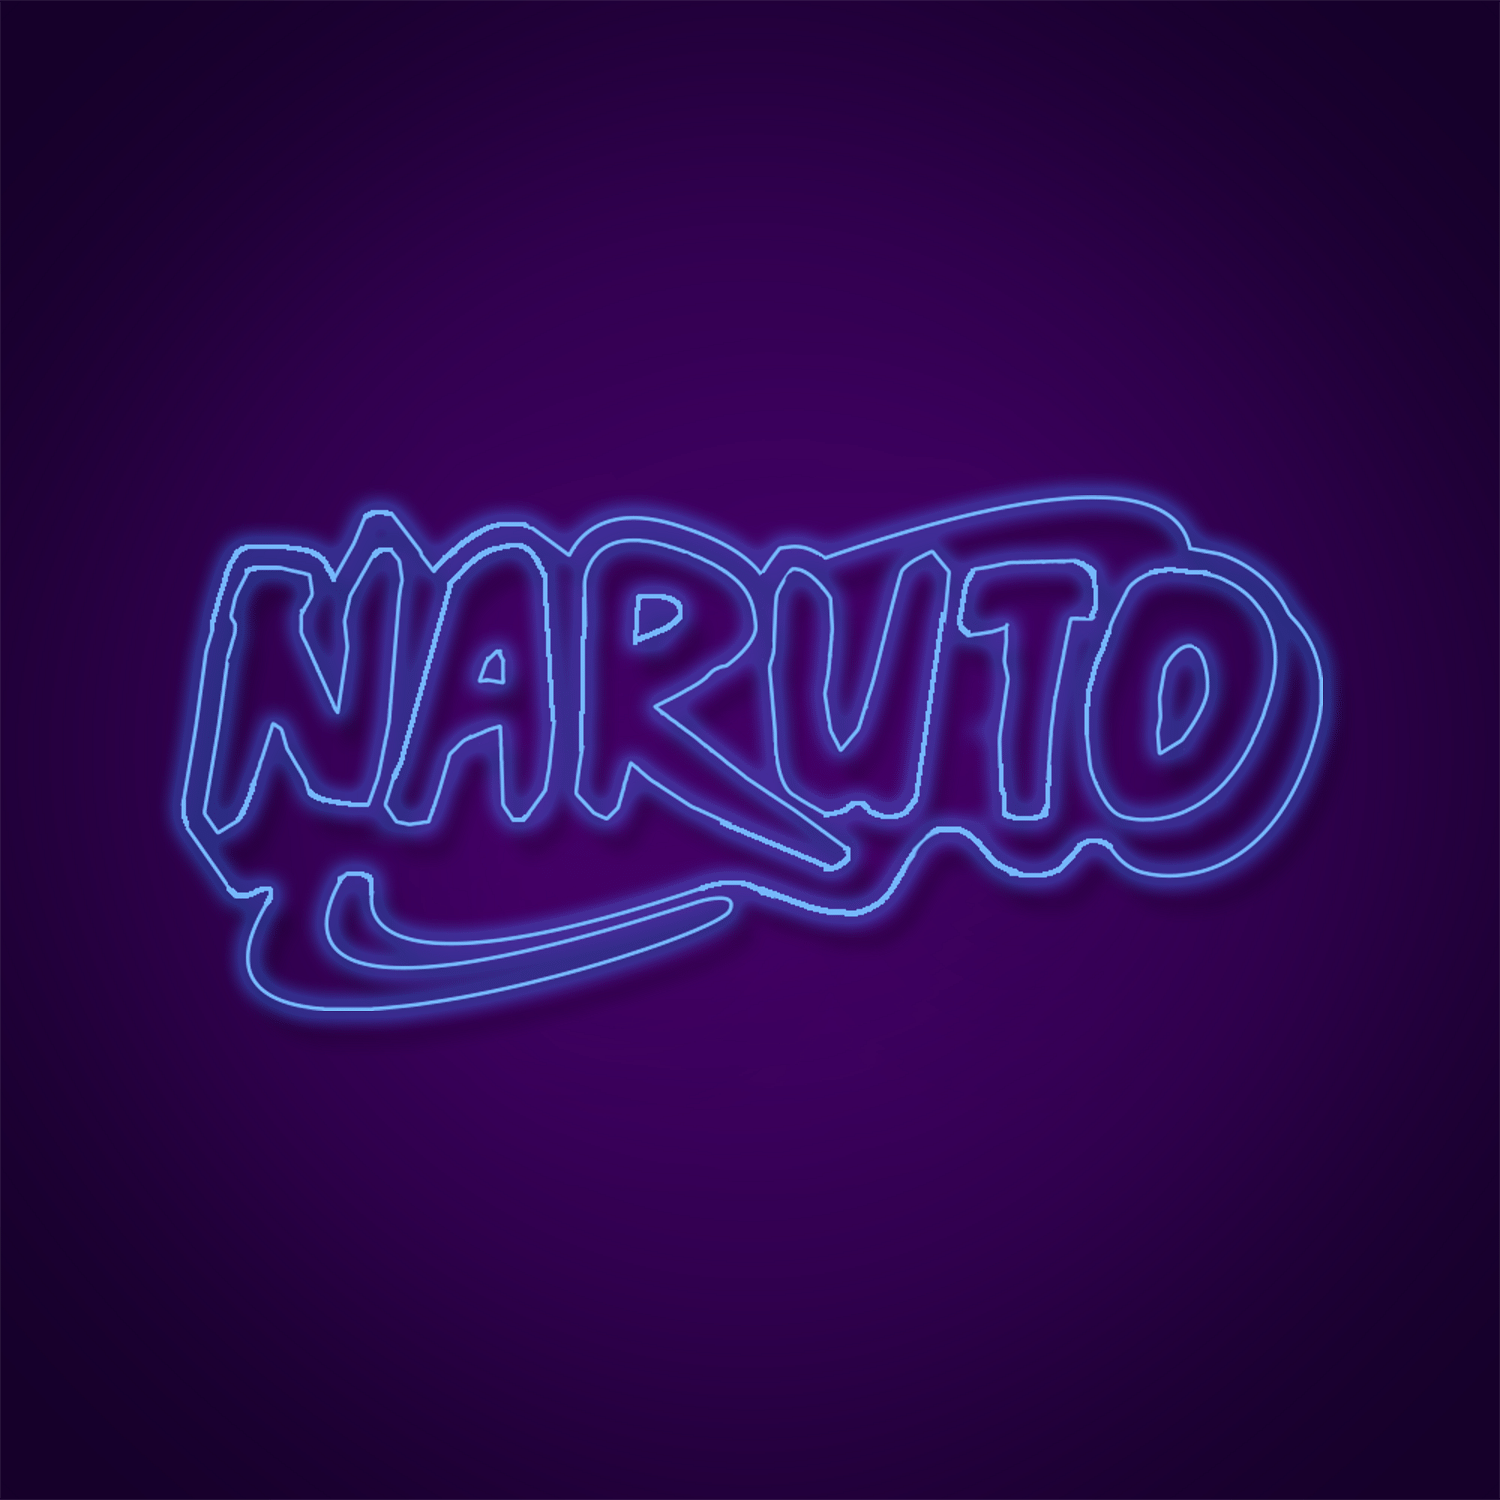 Naruto Led Neon - Anime Wall Art